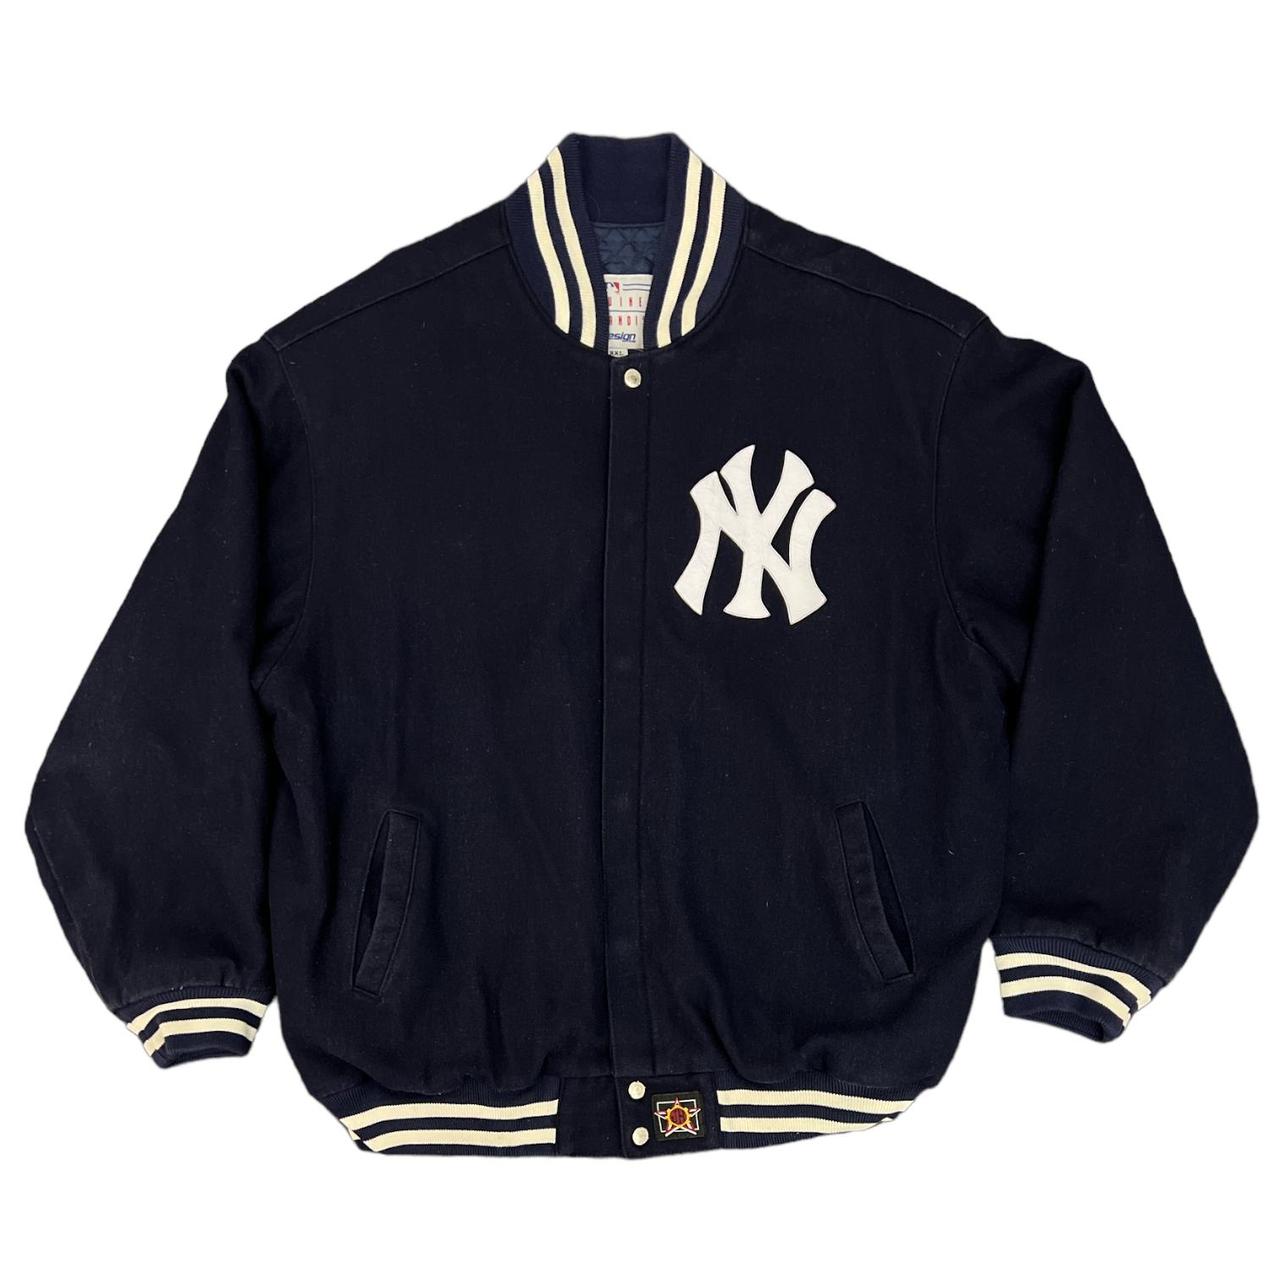 NY Yankees Black and White Letterman Jacket